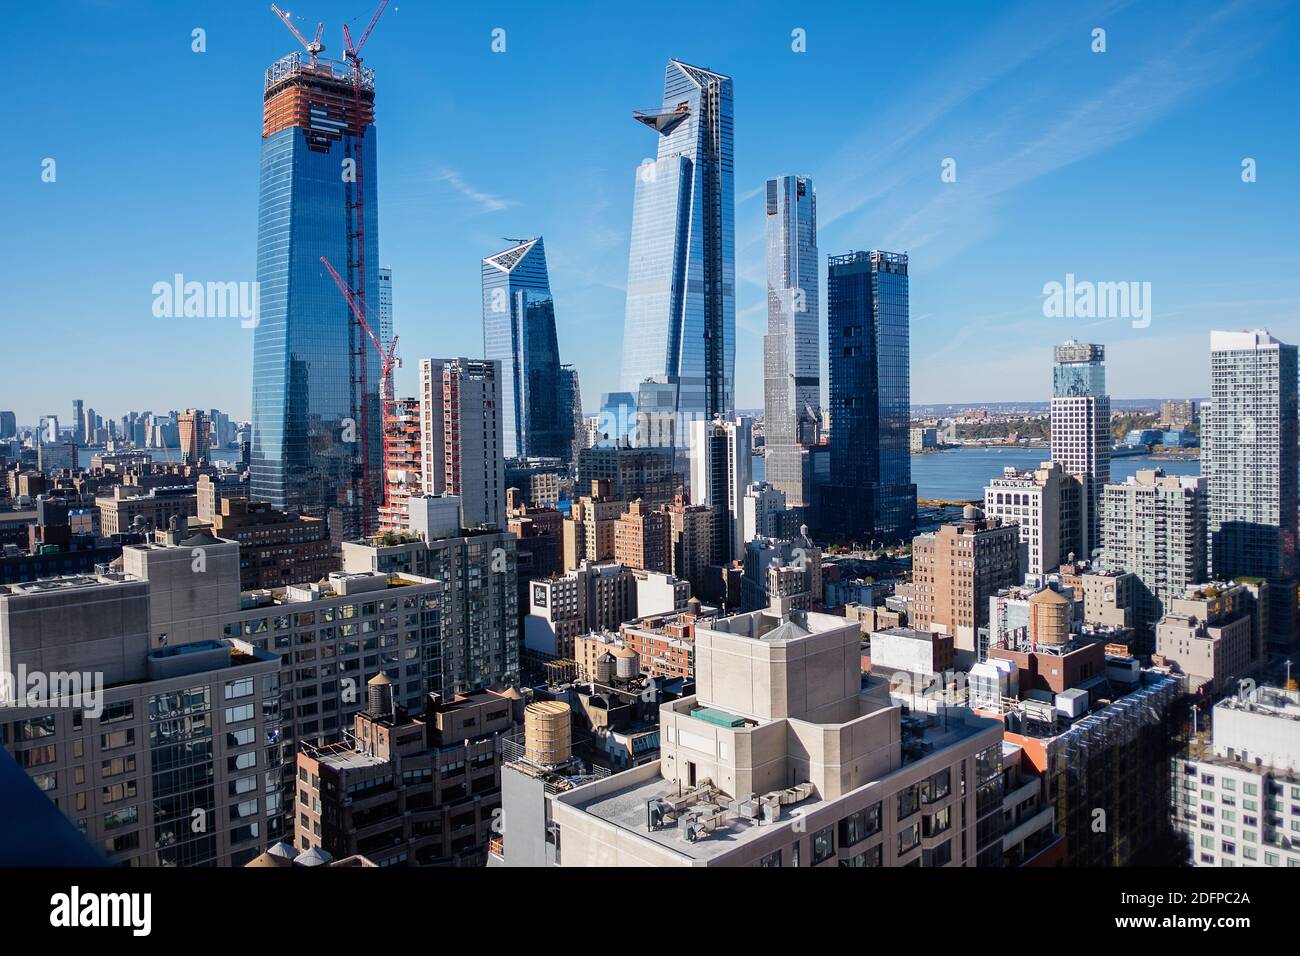 Das Stadtbild von New York City / Manhattan Skyline Stockfoto